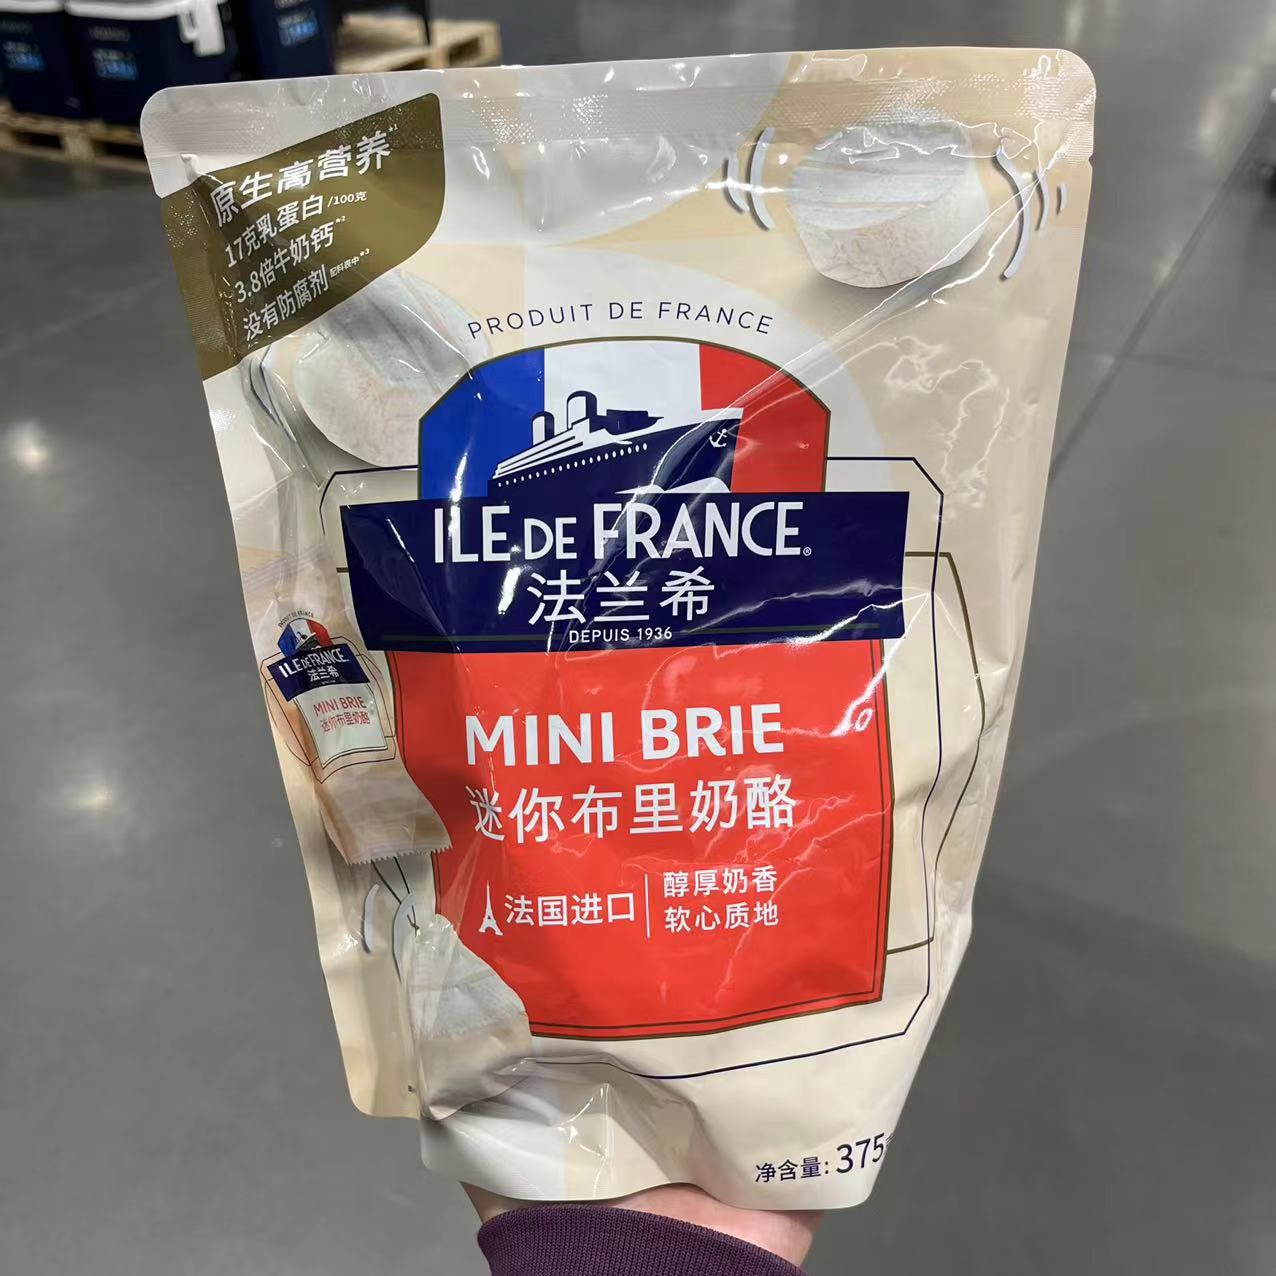 上海Costco开市客购法国ILE DE FRANCE法兰希迷你布里奶酪 25g*15 - 图1